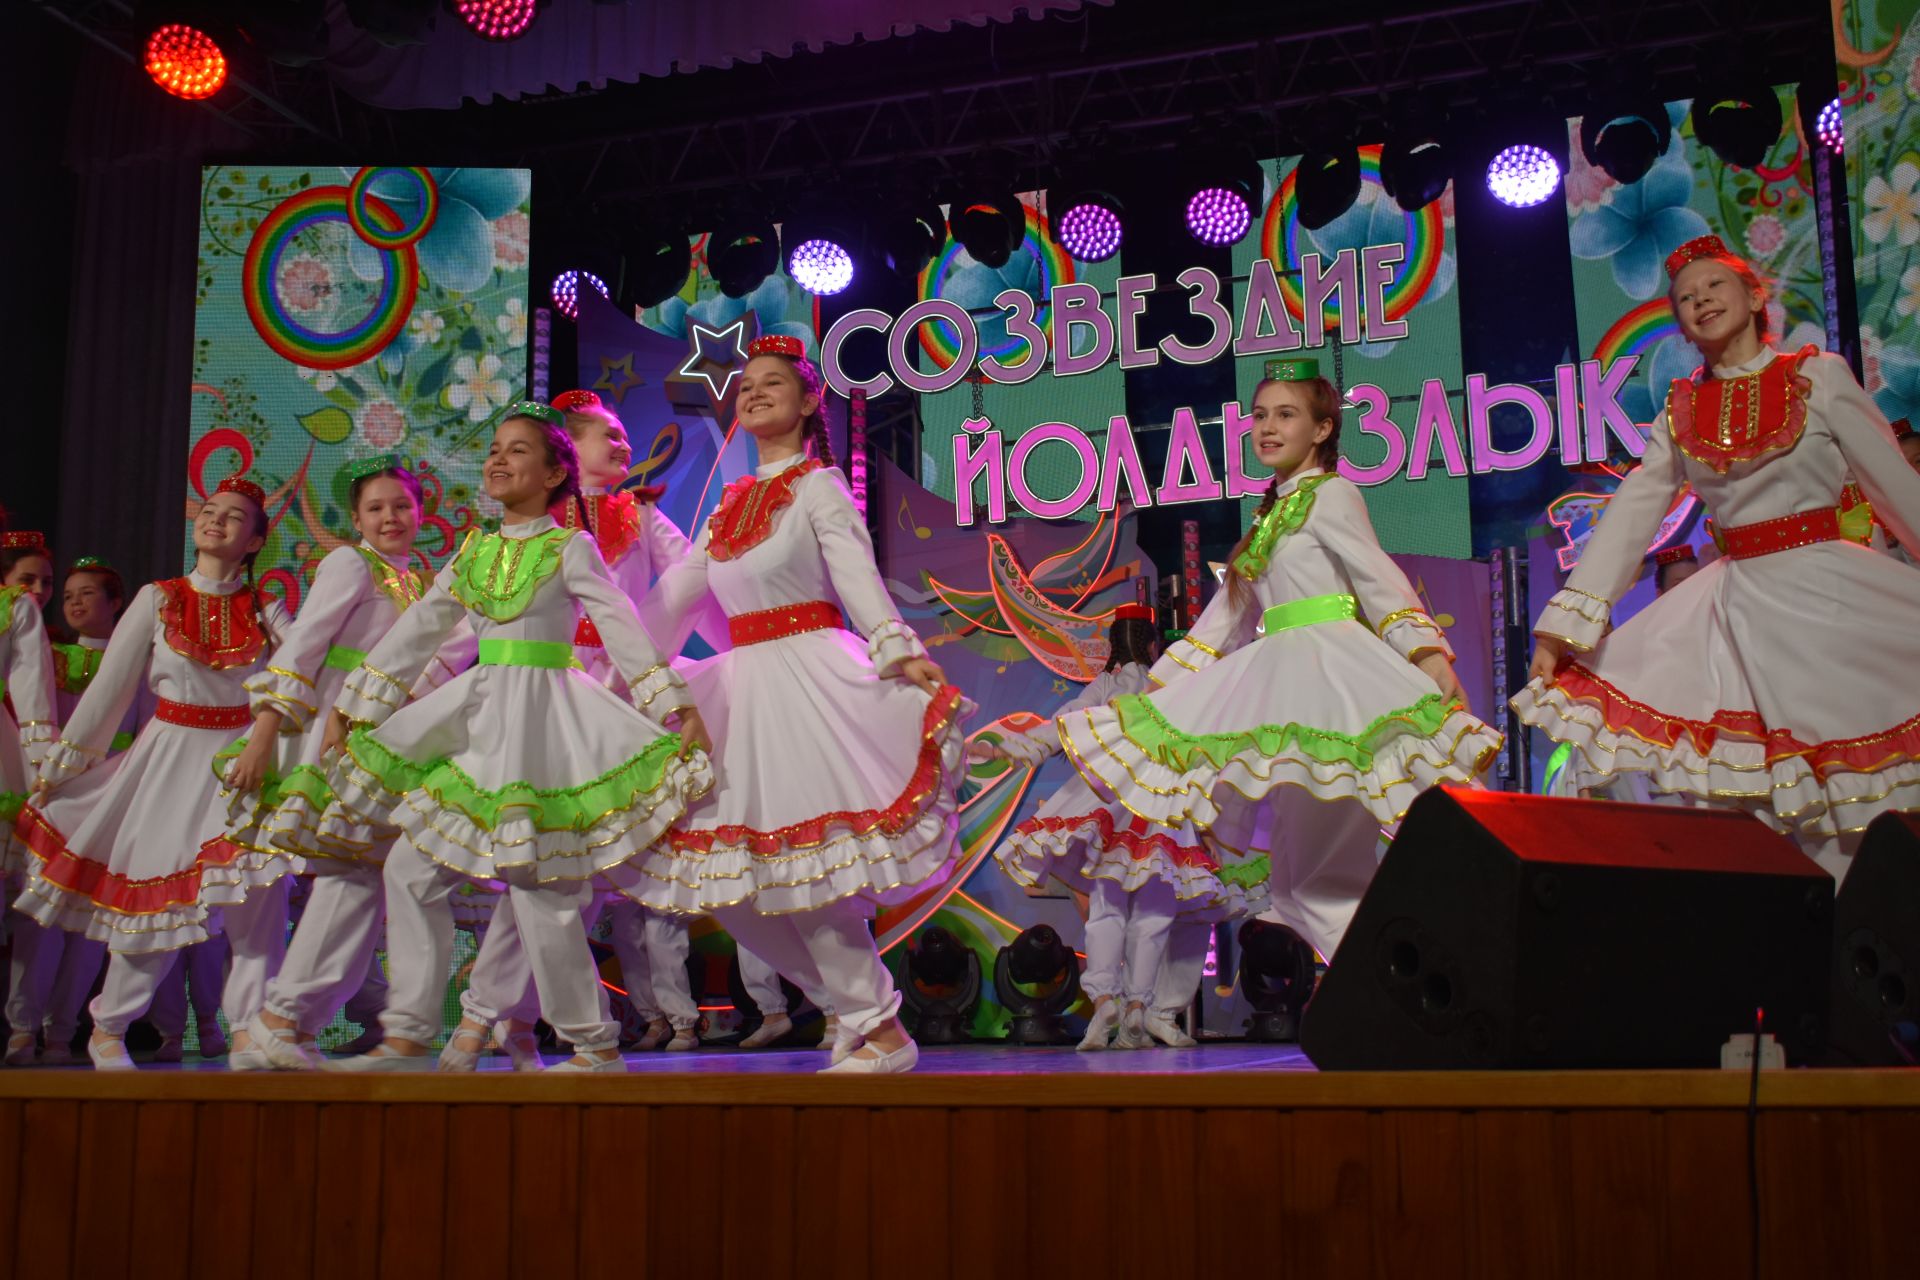 Первый конкурсный день зонального этапа фестиваля «Созвездие-Йолдызлык» в Больших Кайбицах